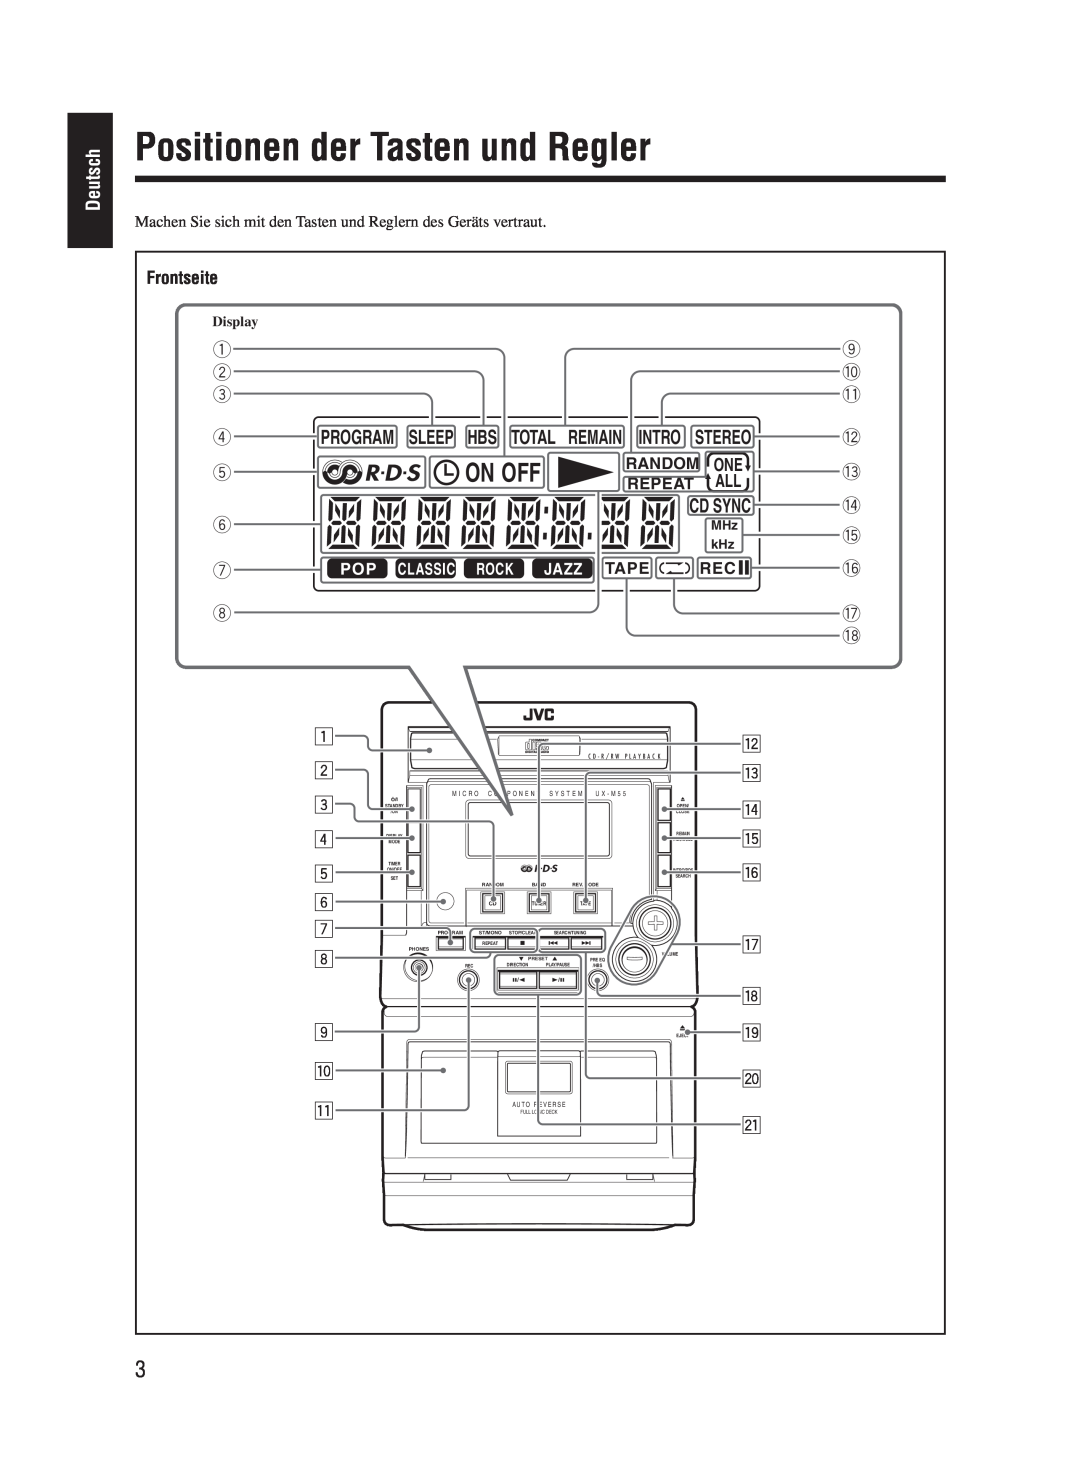 JVC UX-M55 manual Positionen der Tasten und Regler, On Off, Deutsch 